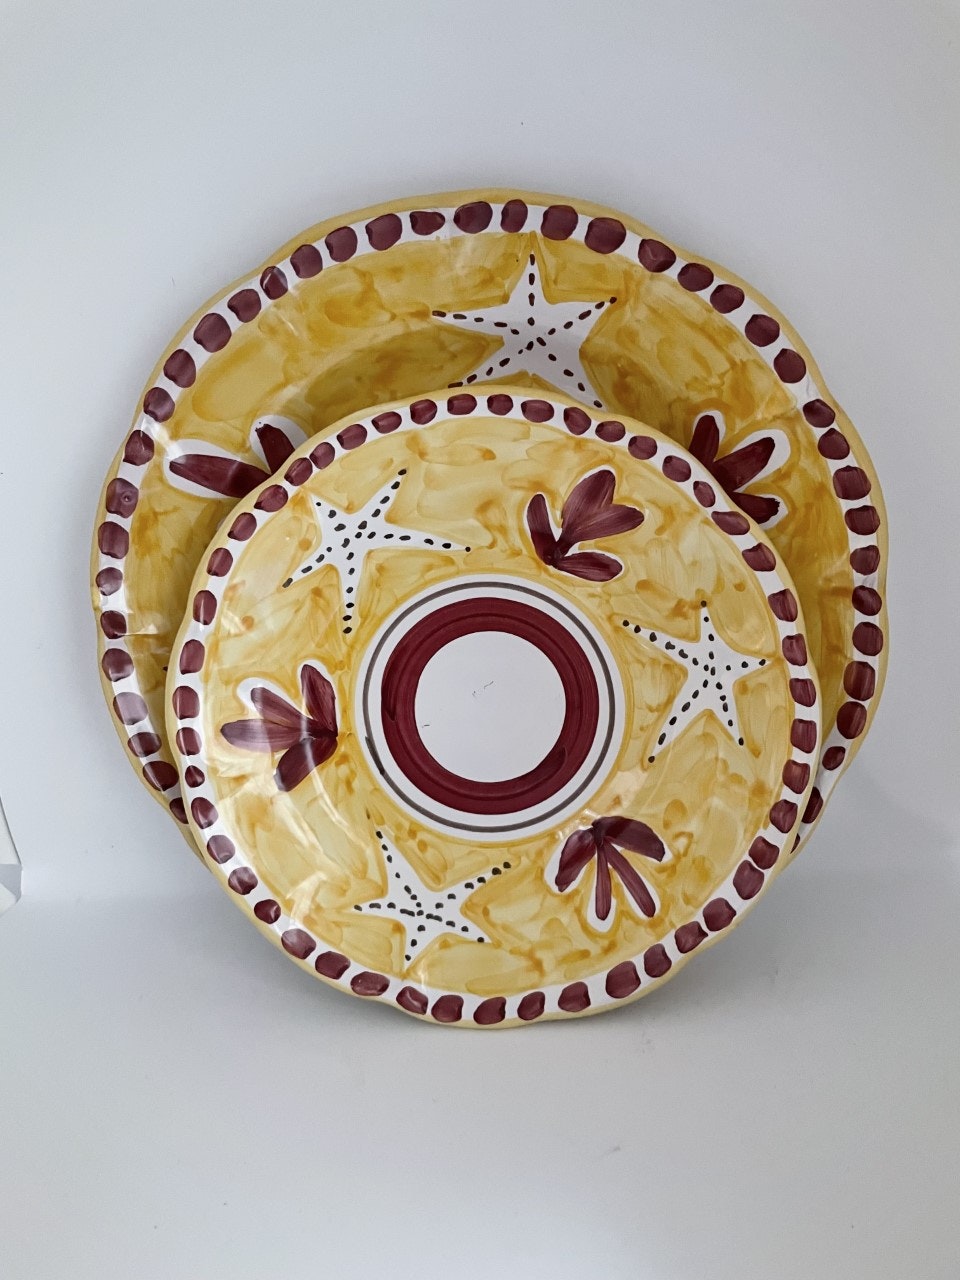 Amalfi assiett, gul med sjöstjärnemönster, 20 cm